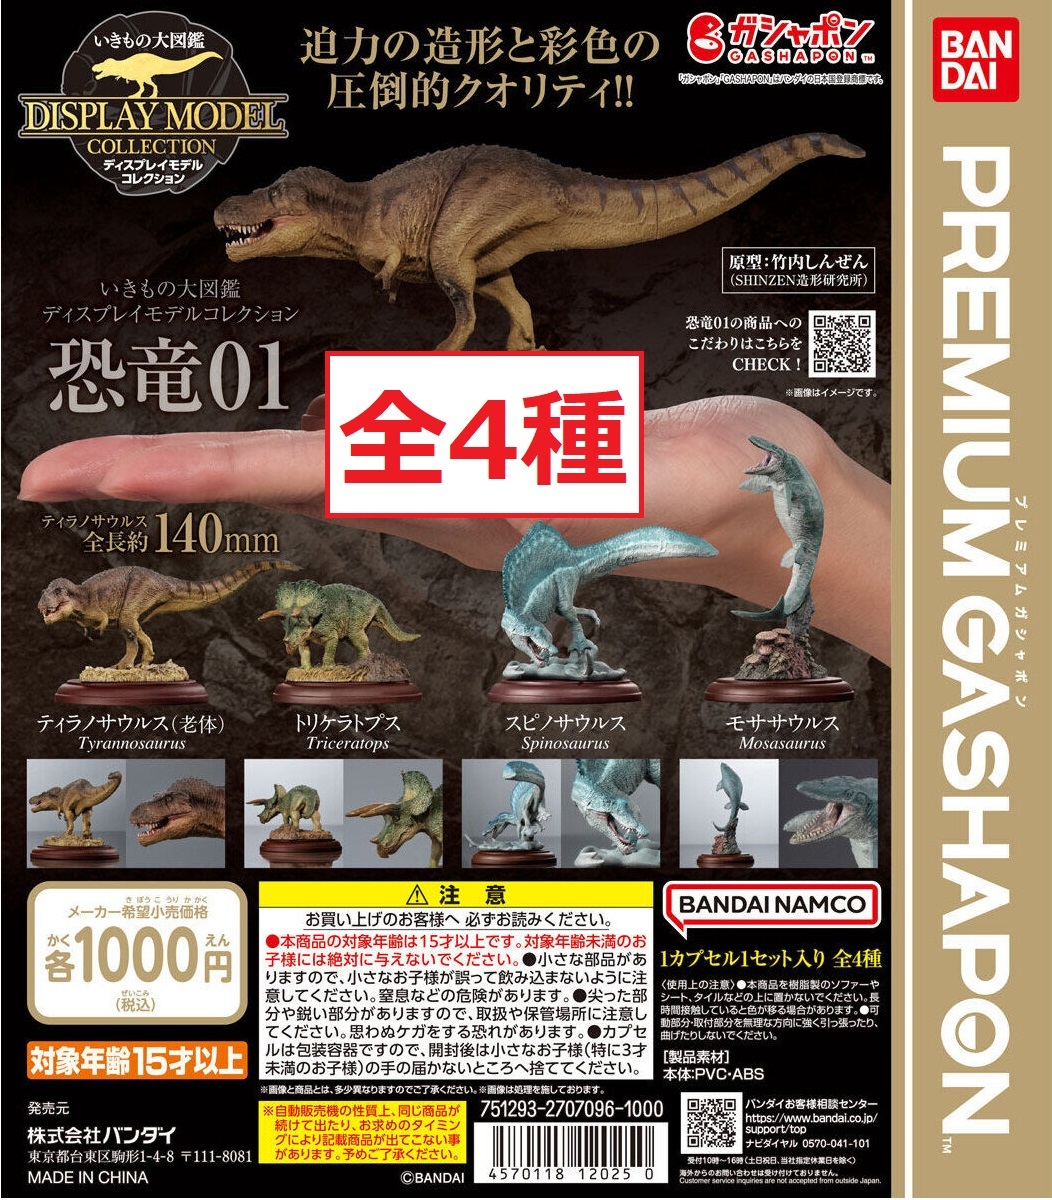 *. кимоно большой иллюстрированная книга дисплей модель коллекция динозавр 01 все 4 вид s Pinot sauru -тактный likelatop Stila nosaurusmosasaurus